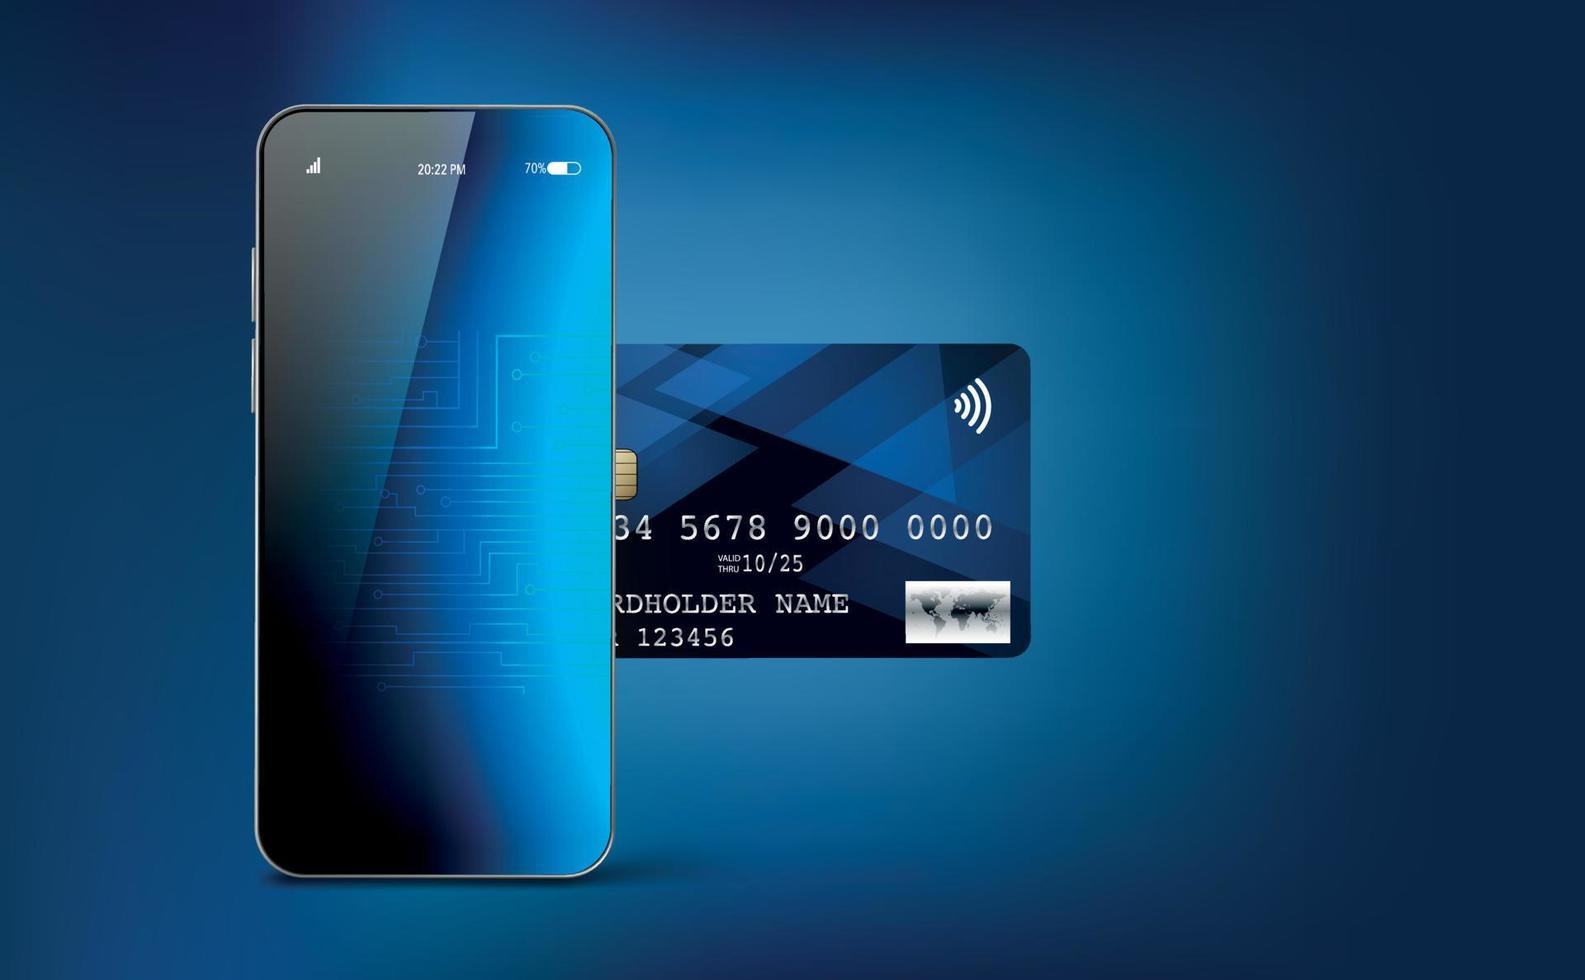 bank digitale creditcard concept met mobiele telefoon, blauwe achtergrond met kleurovergang. vector illustratie